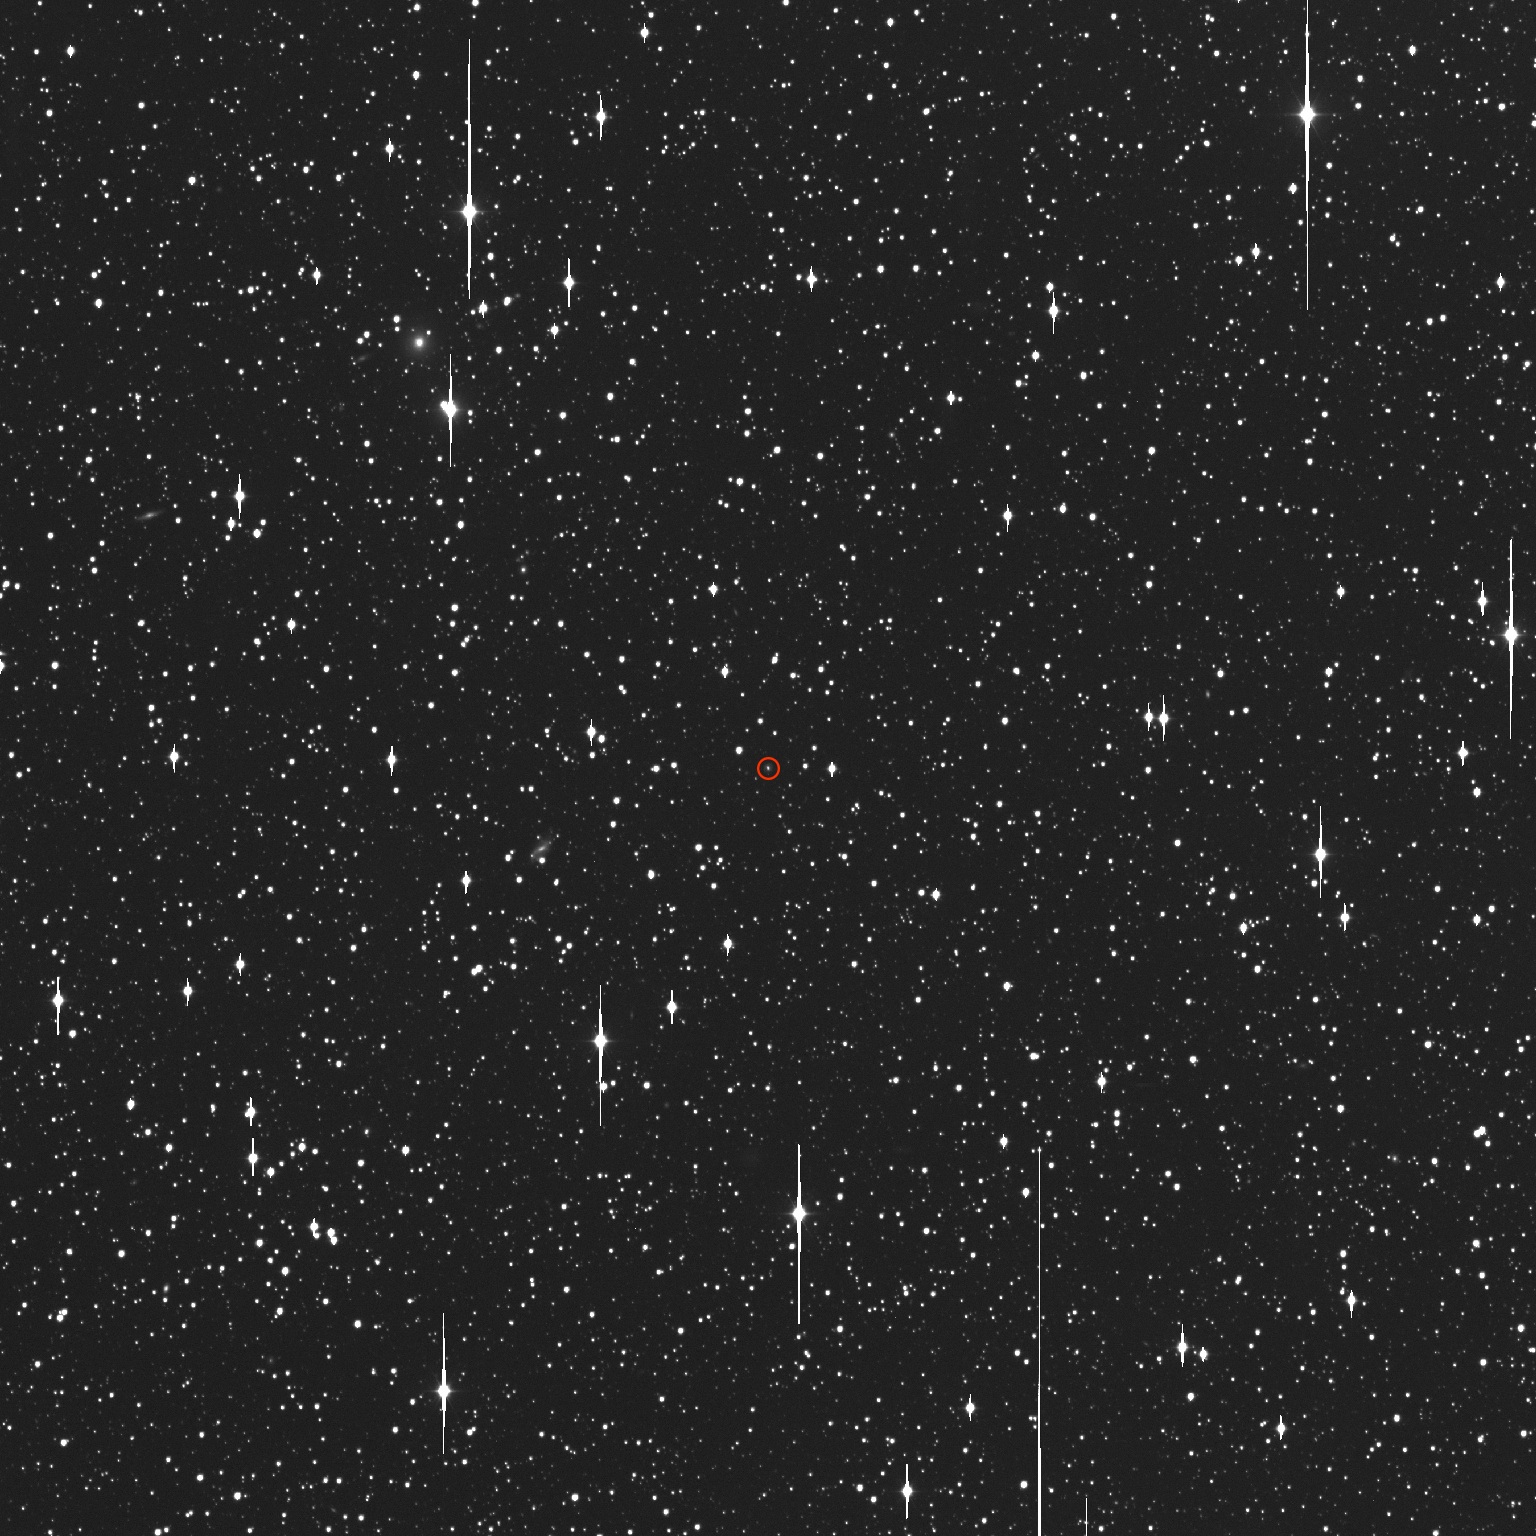 Il Zwicky Transient Facility ha catturato l'evento di distruzione marcale di AT2019dsg, cerchiato in rosso, il 19 ottobre 2019. Credit: ZTF/Caltech Optical Observatories